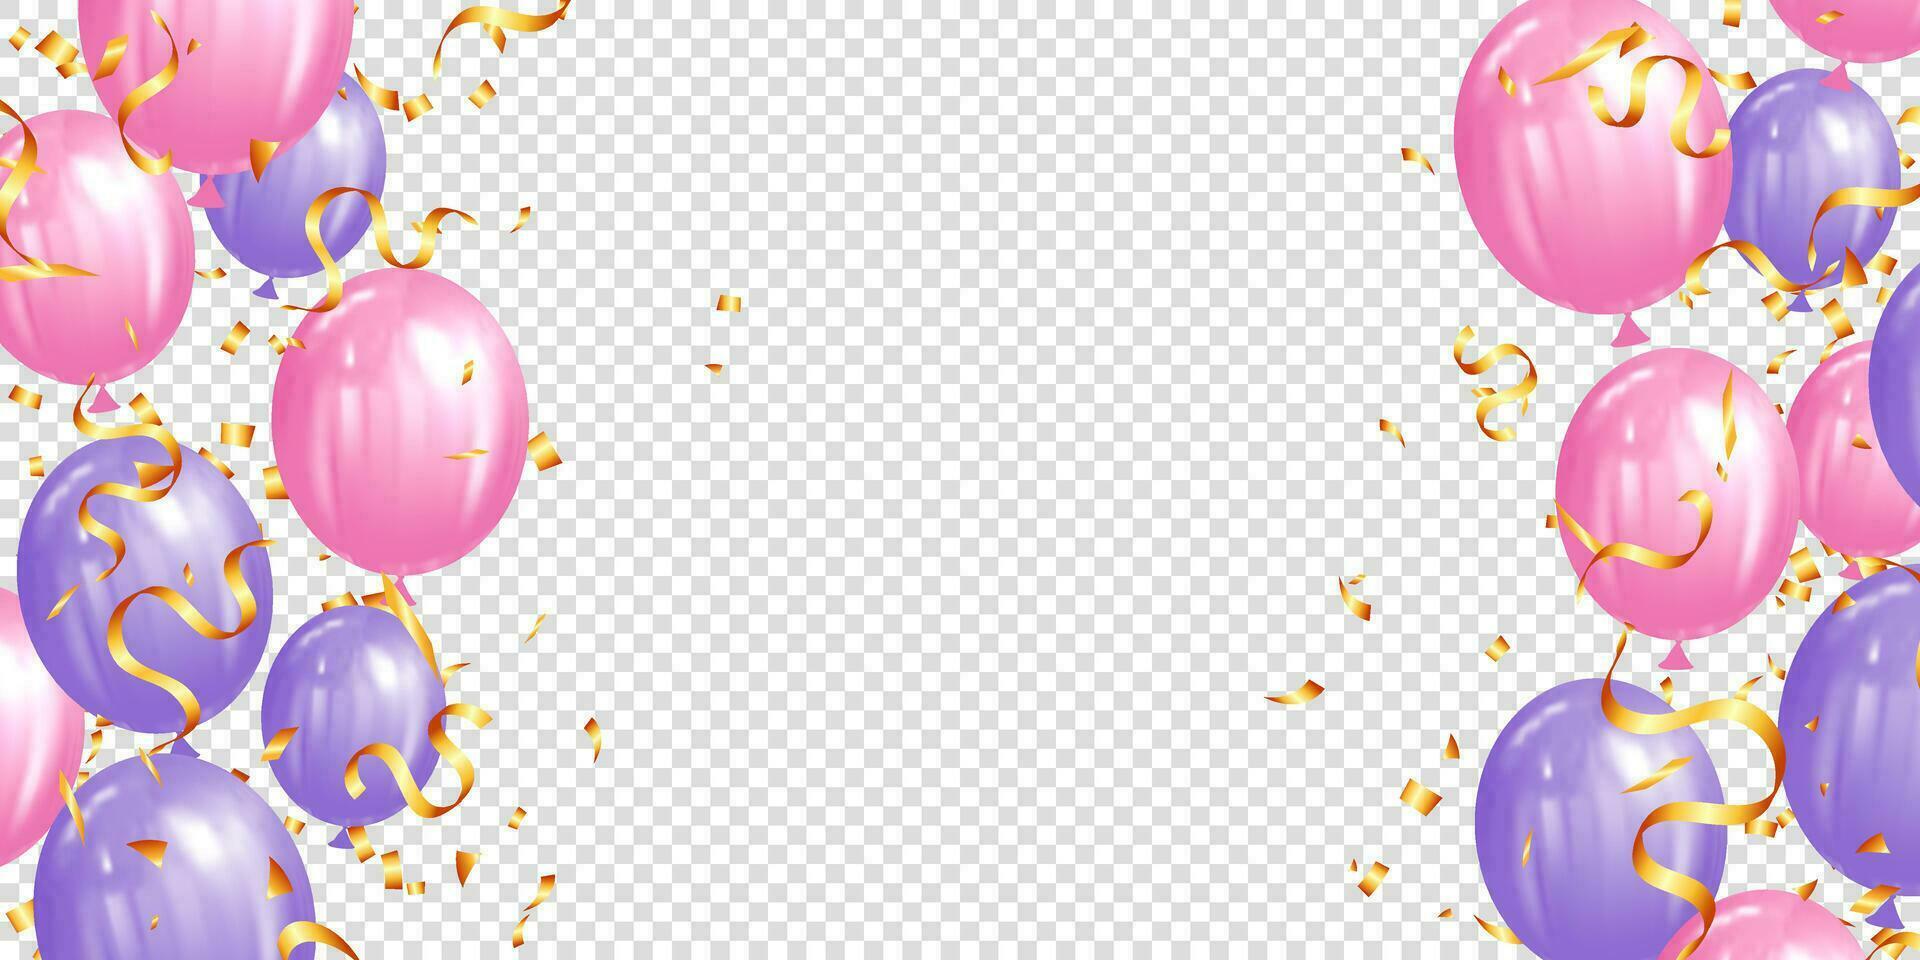 roze en Purper helium ballonnen achtergrond voor verjaardag, verjaardag, viering, evenement vector illustratie